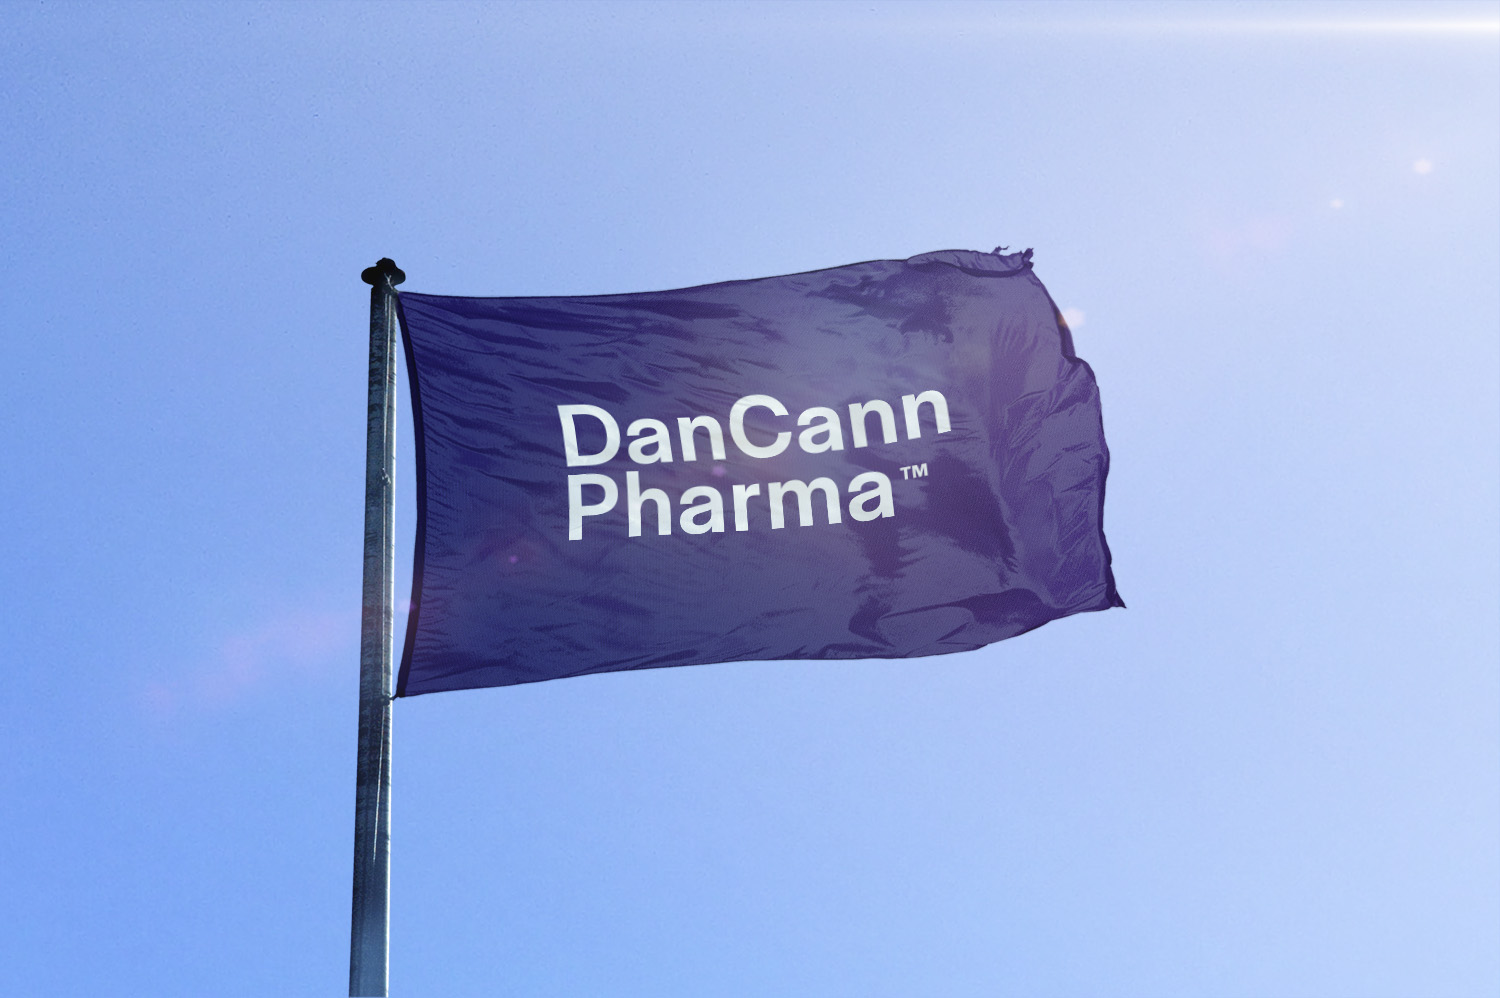 DanCann Pharma på et marked i vækst